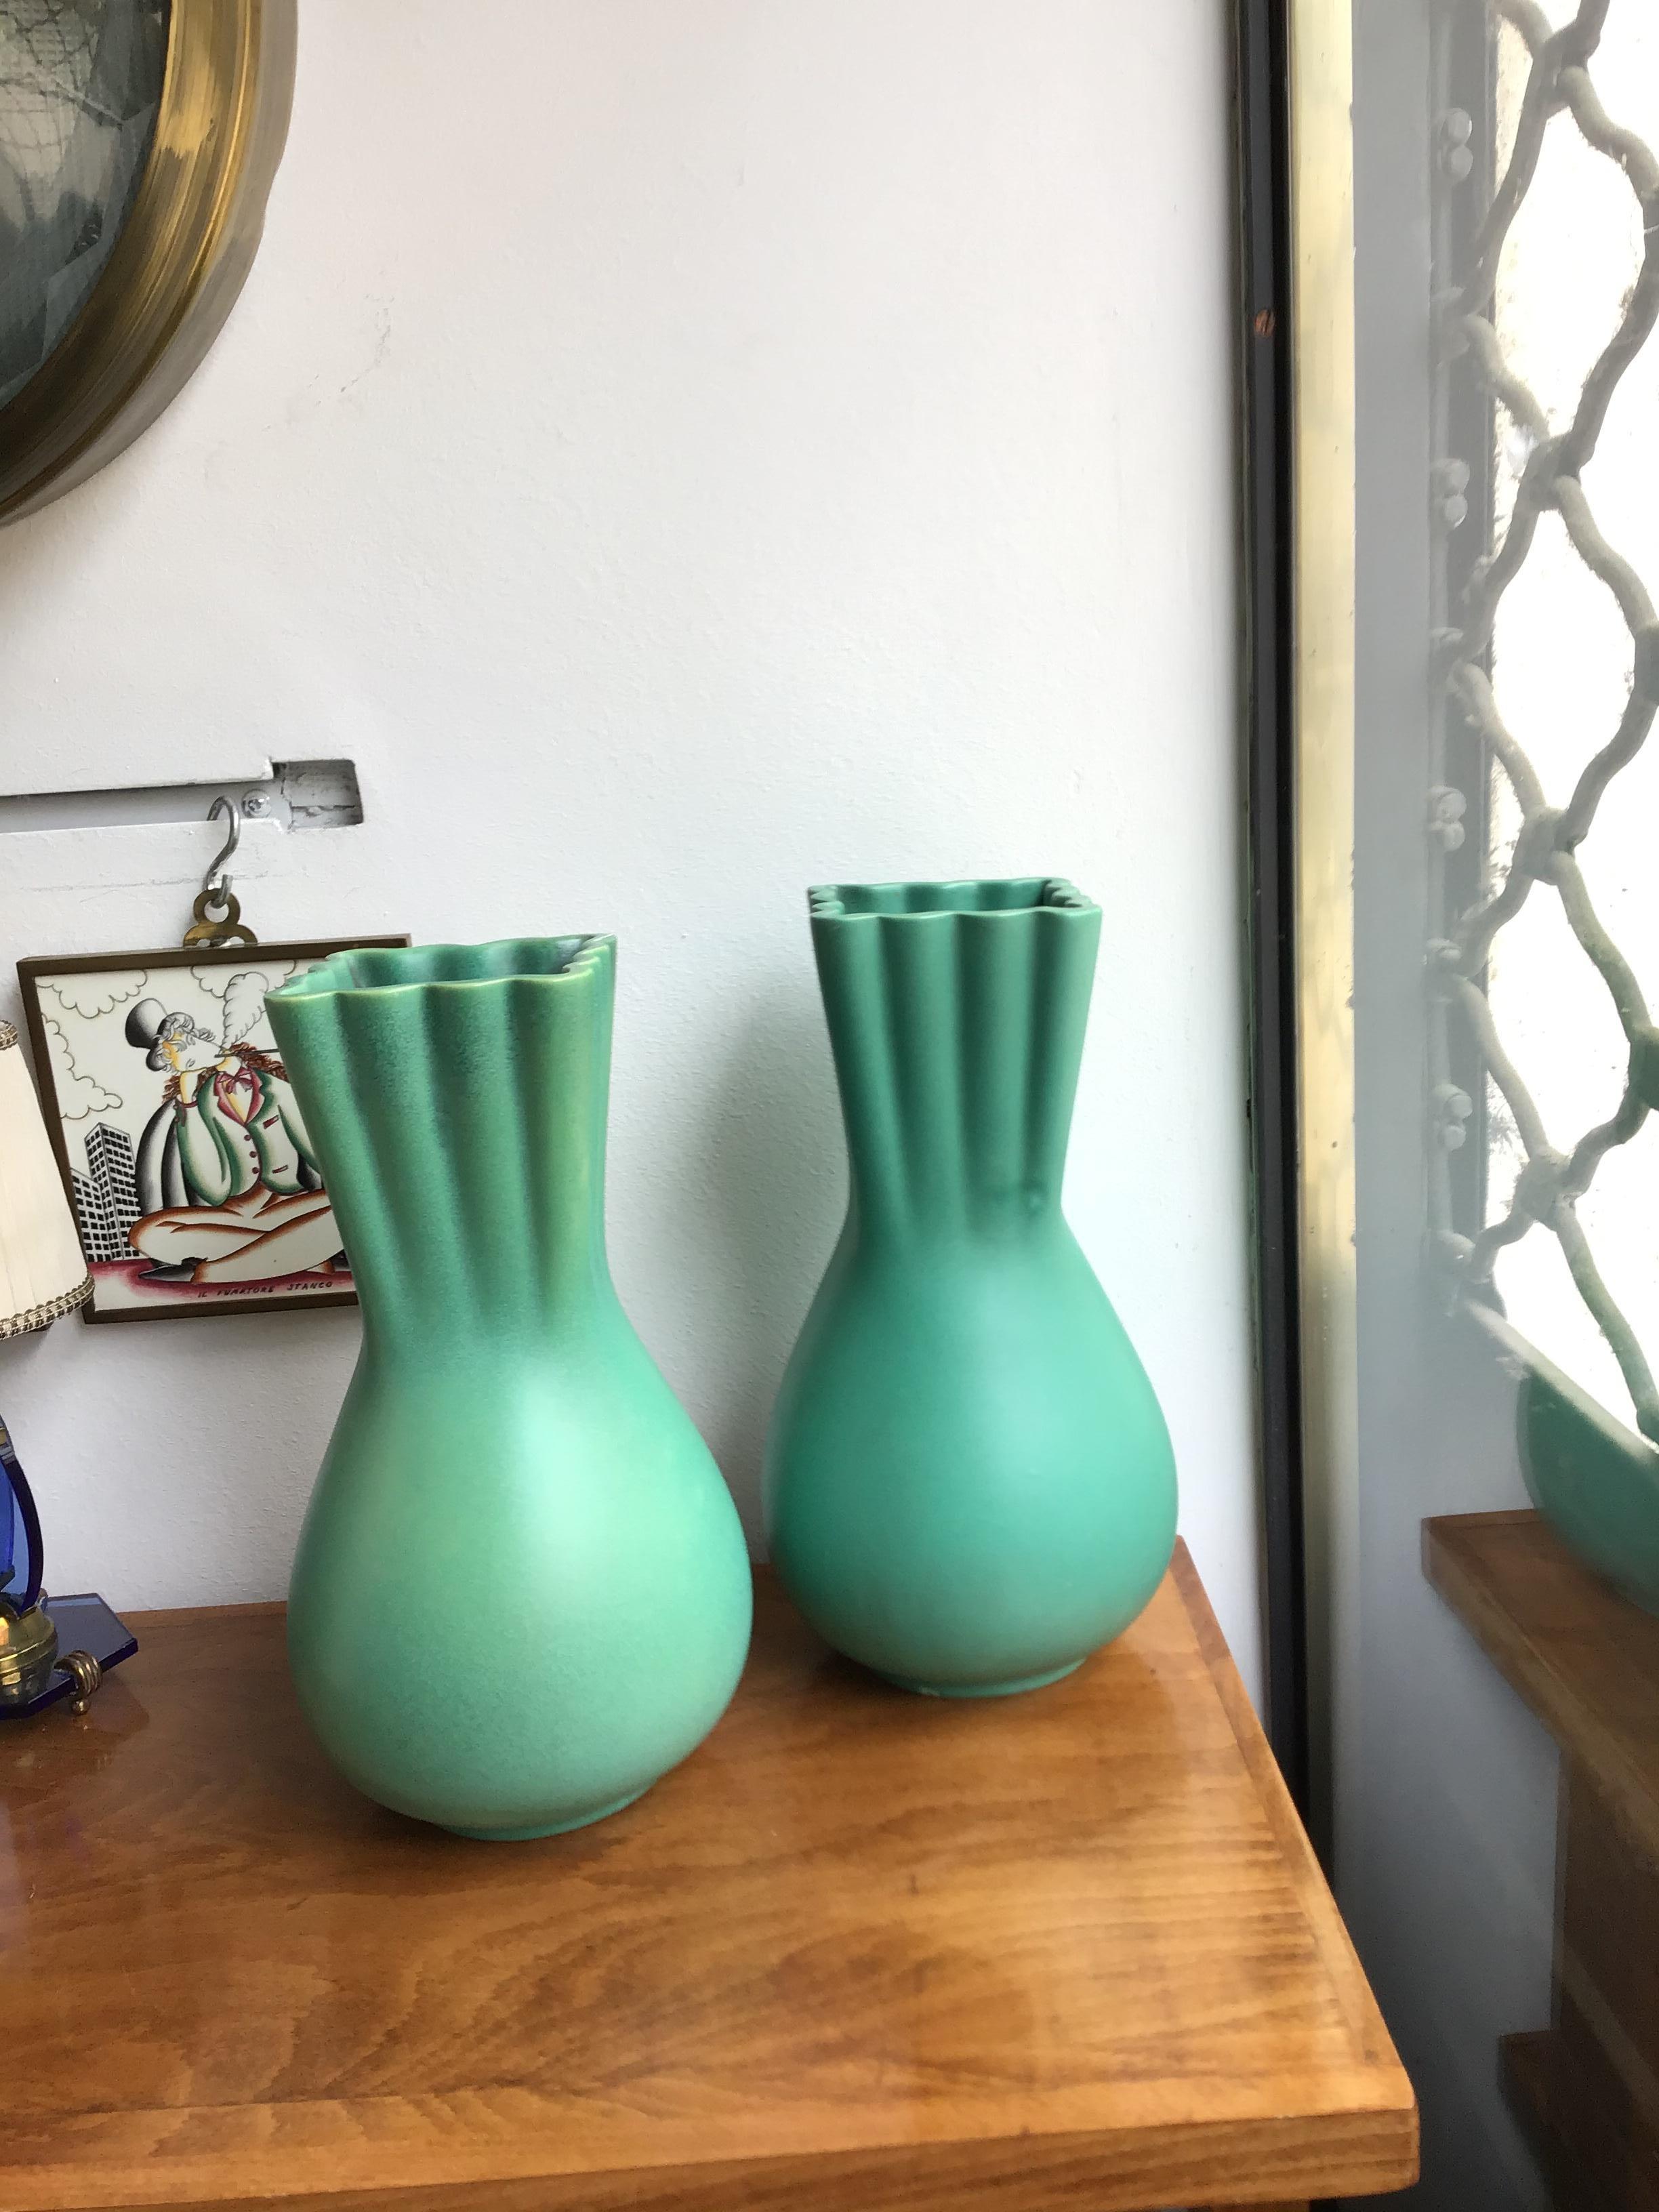 Richard Ginori Giovanni Gariboldi green vase ceramic, 1950, Italy.